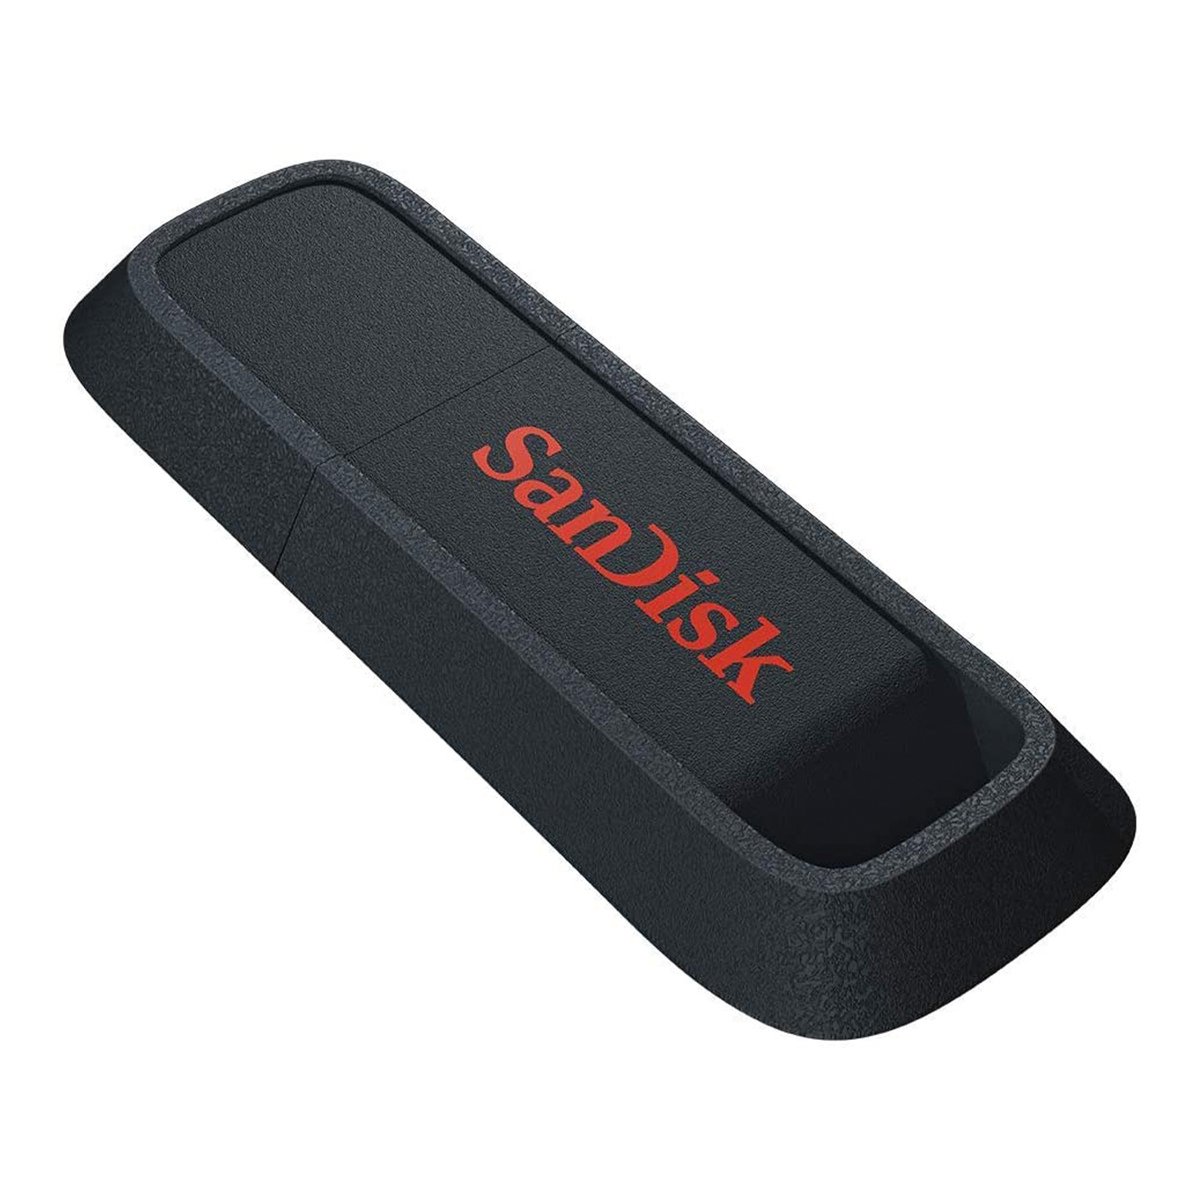 SANDISK  Ultra Trek USB 3.0 Flash Drive 128GB